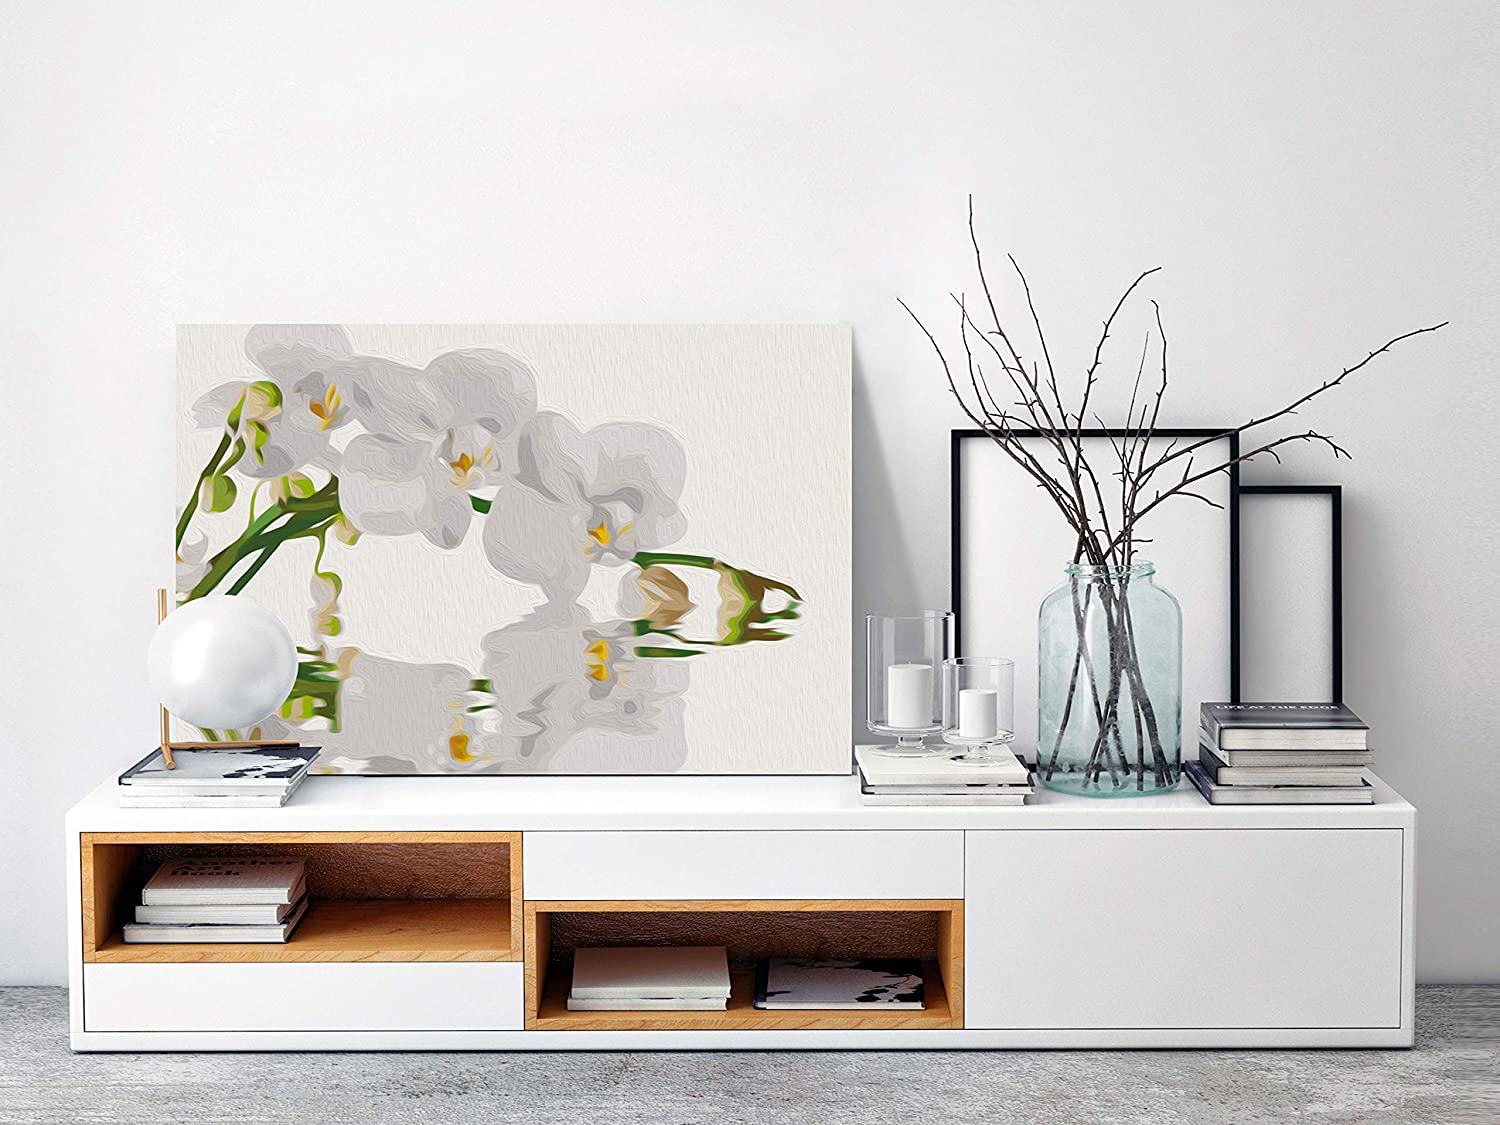 Fehér Orchidea - számfestő készlet